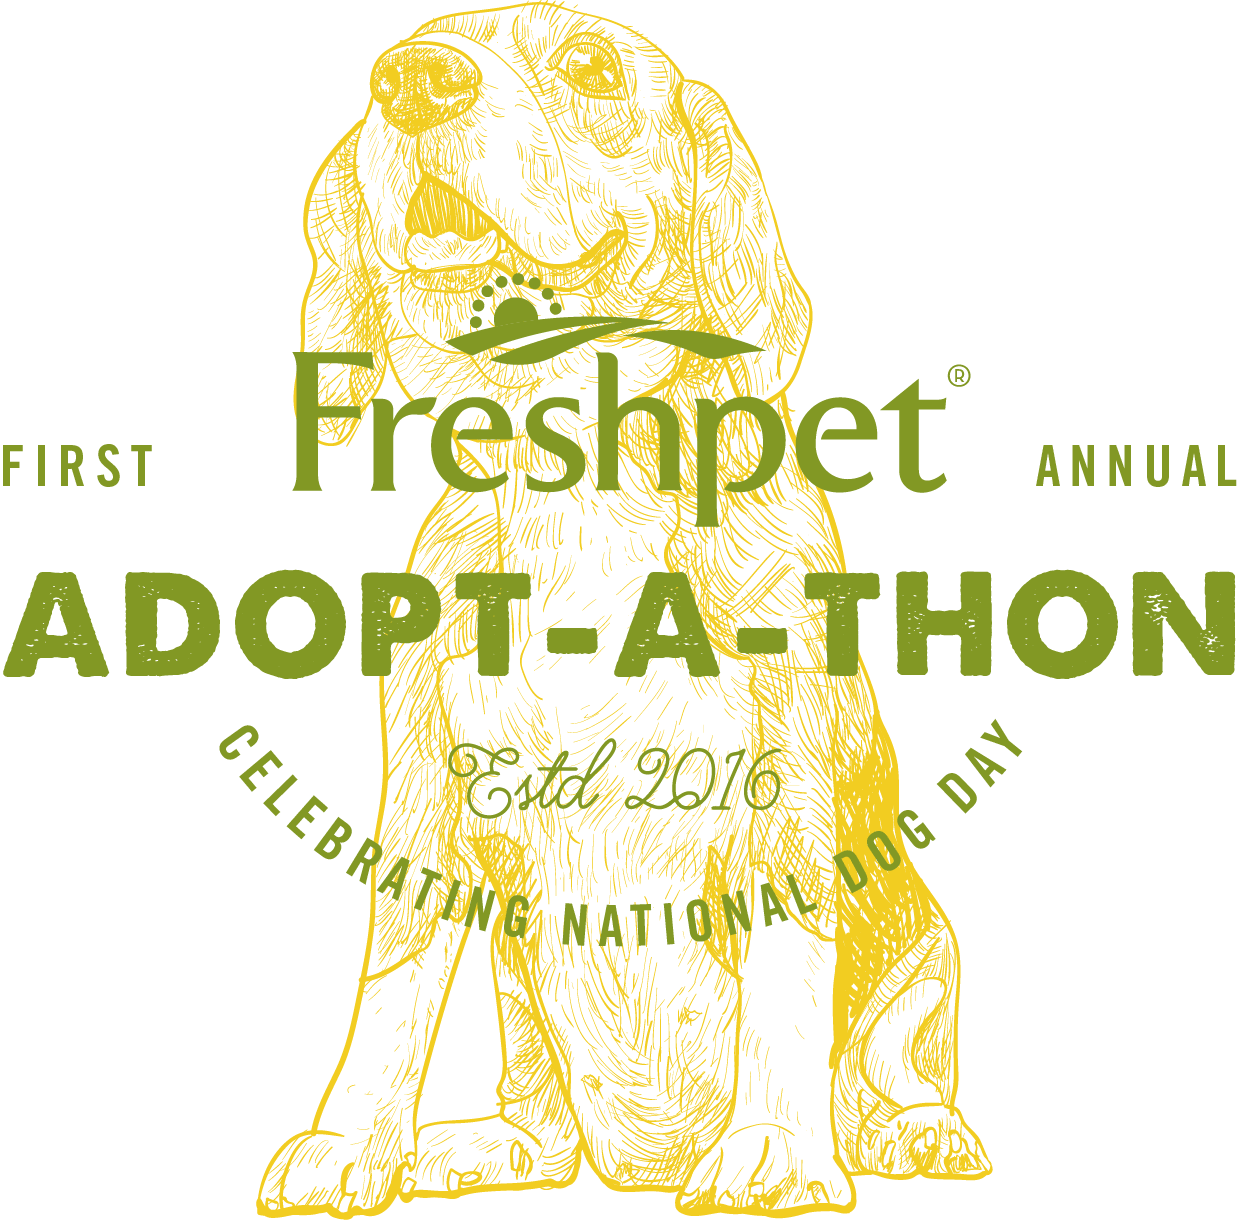 Célébrez la Journée nationale du chien avec le premier ADOPT-A-THON annuel